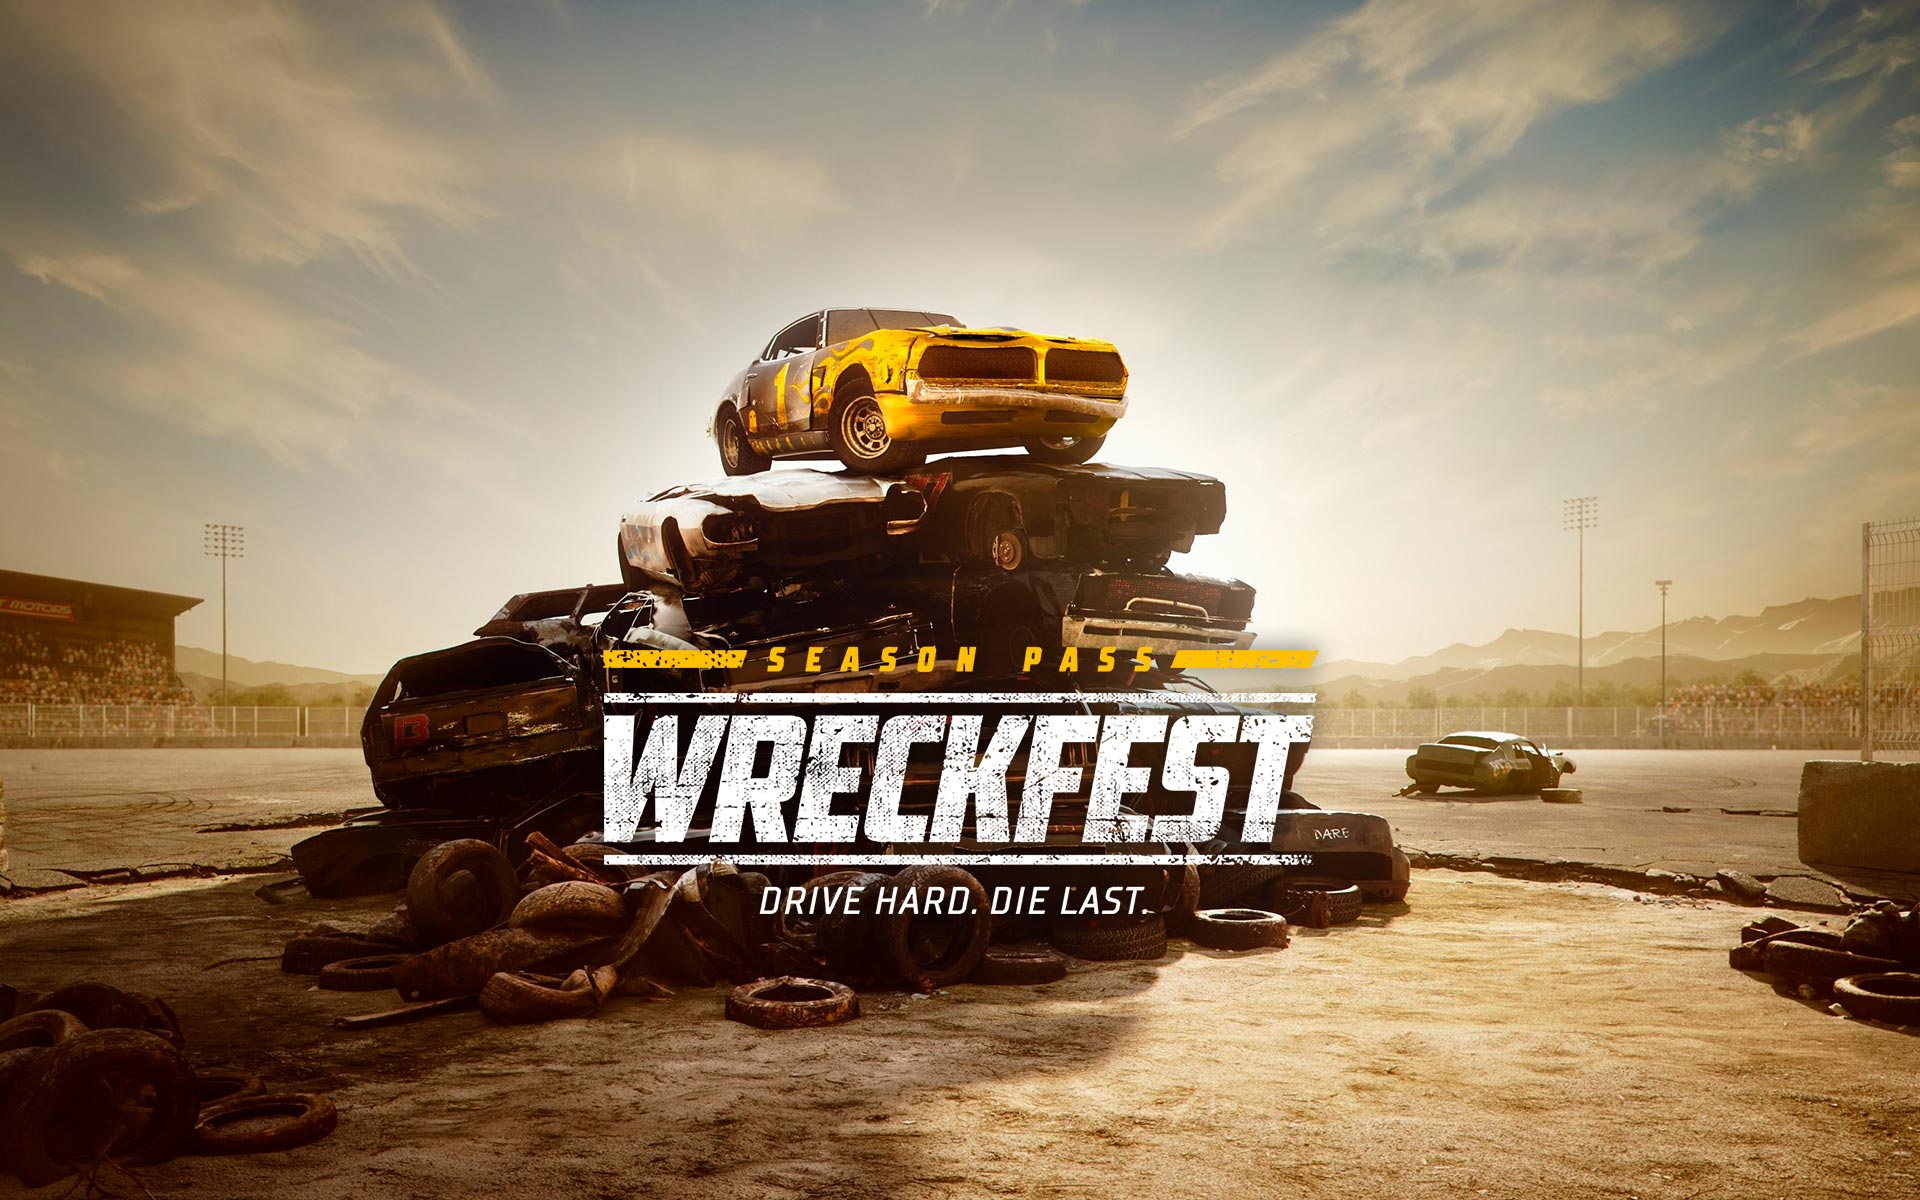 Wreckfest Season Pass 